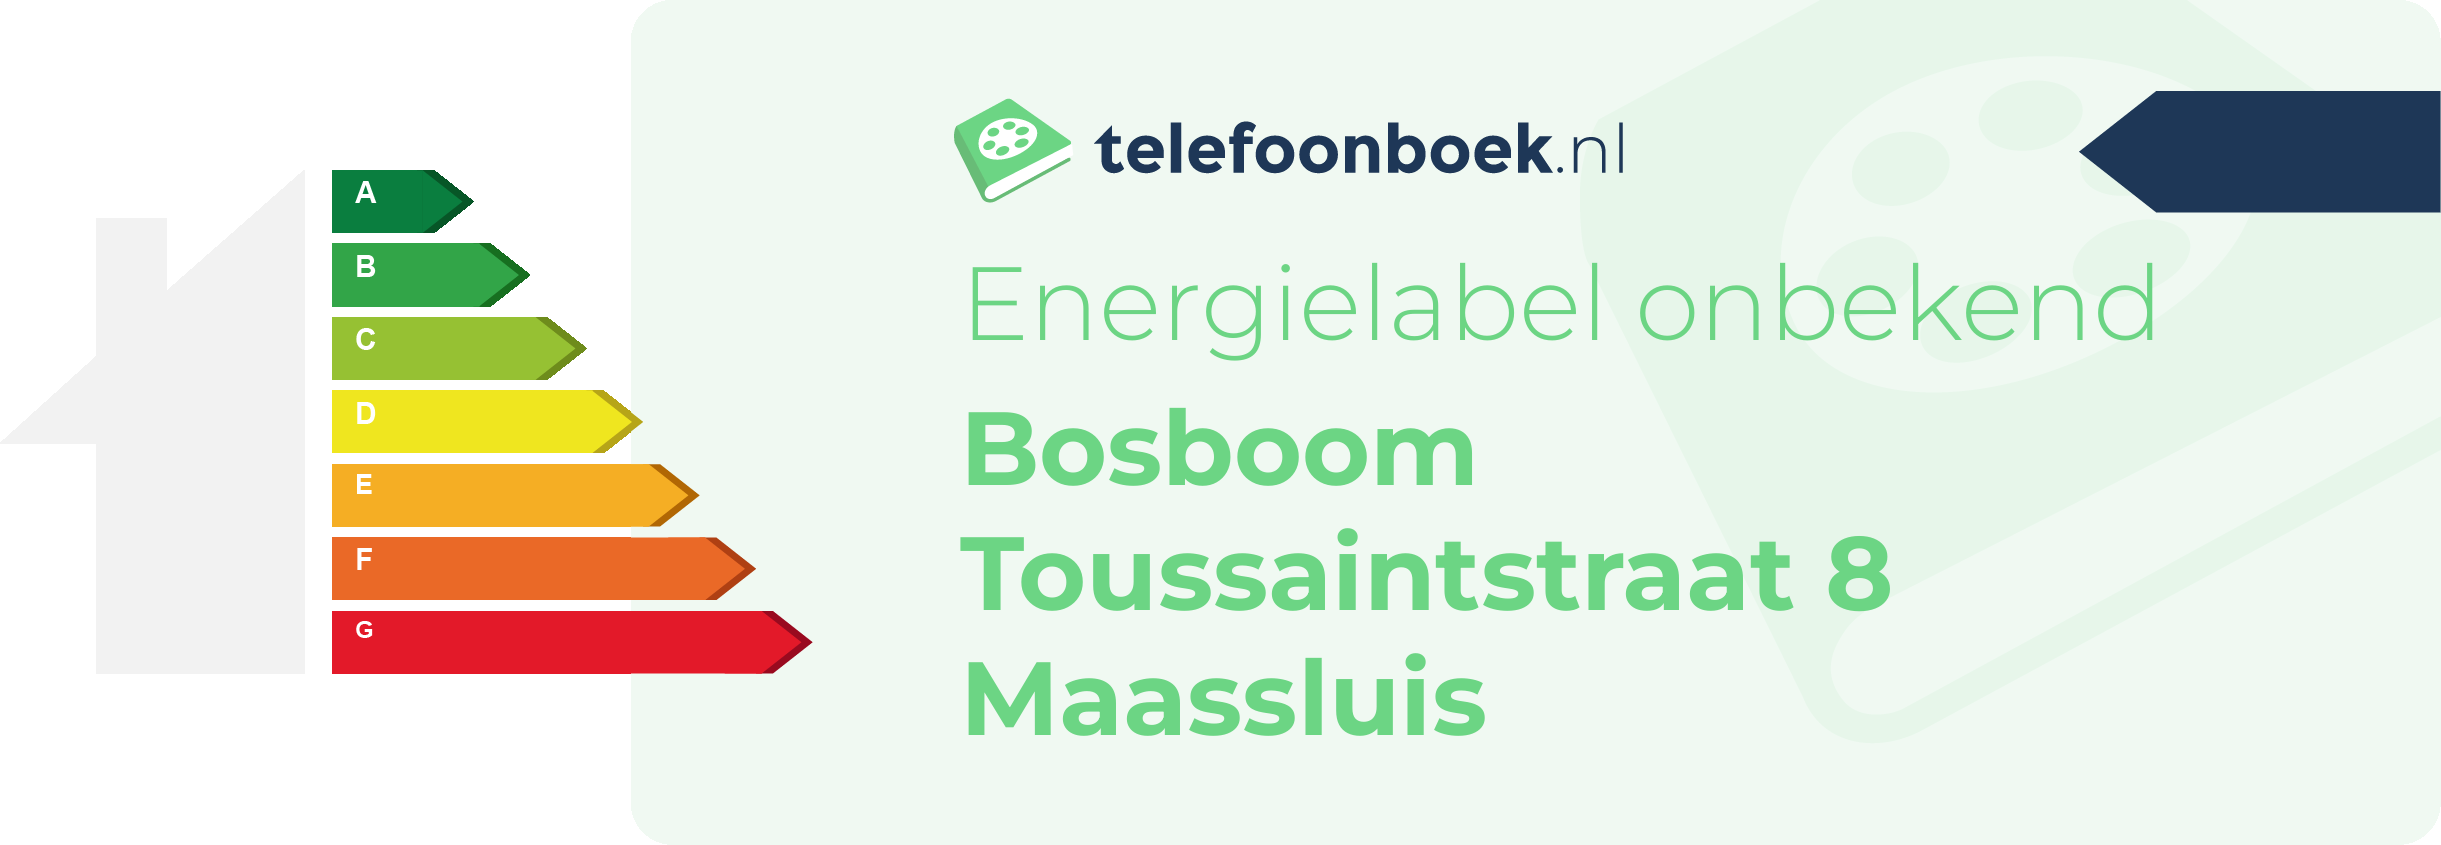 Energielabel Bosboom Toussaintstraat 8 Maassluis